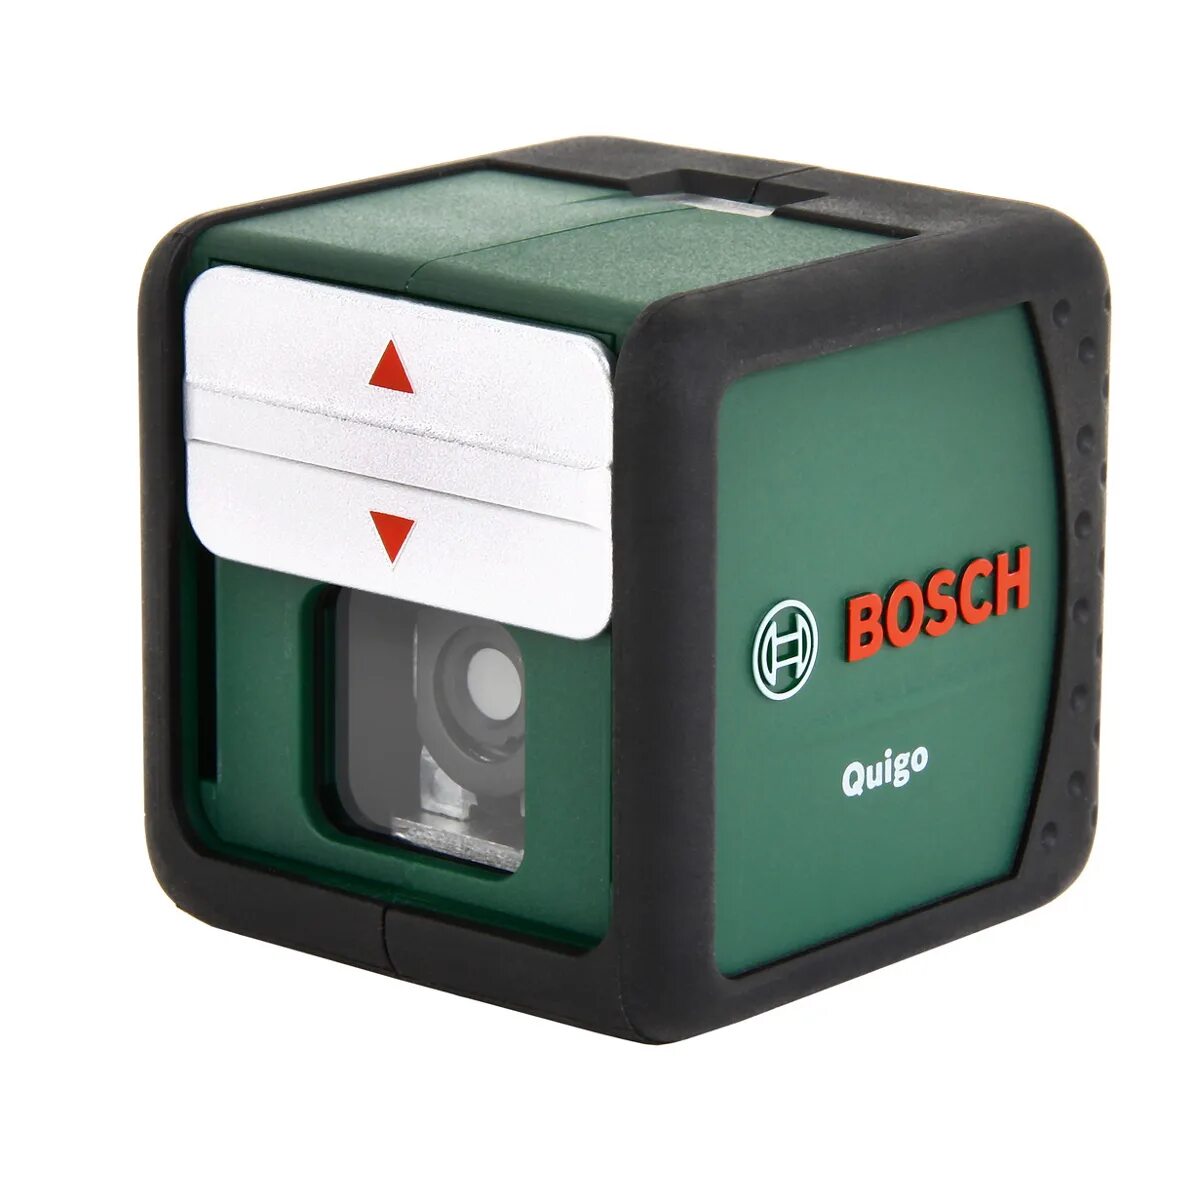 Лазерный уровень Bosch Quigo. 220 Вольт бош лазерный уровень. Лазерный уровень бош самовыравнивающийся. Лазерный уровень Bosch Quigo комплект.